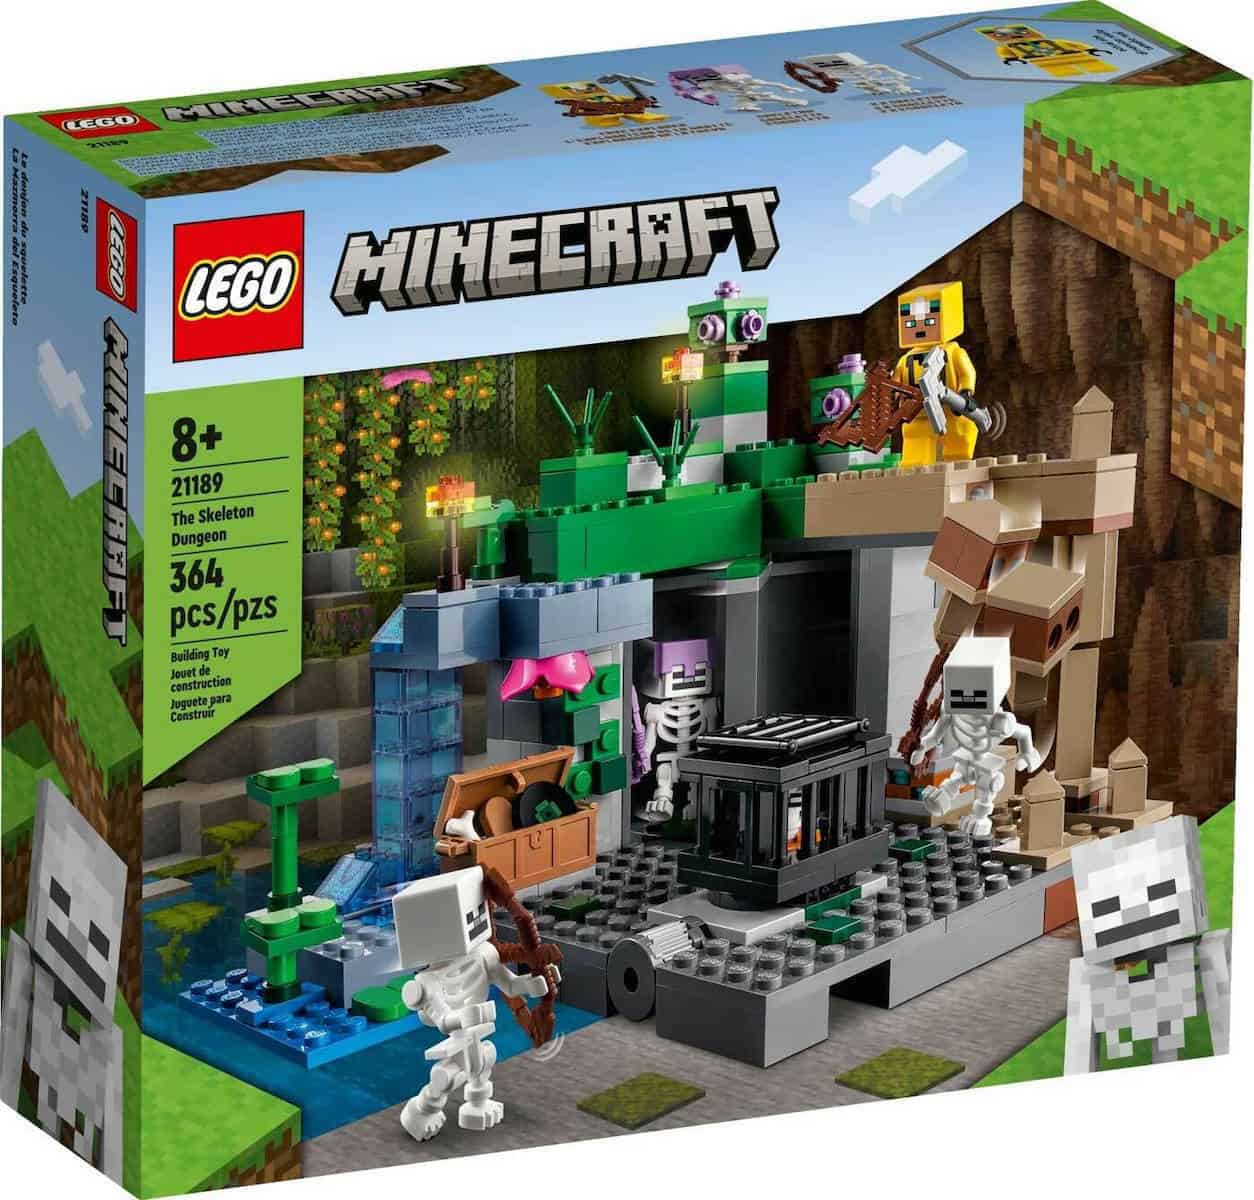 Lego Minecraft - The Skeleton Dungeon